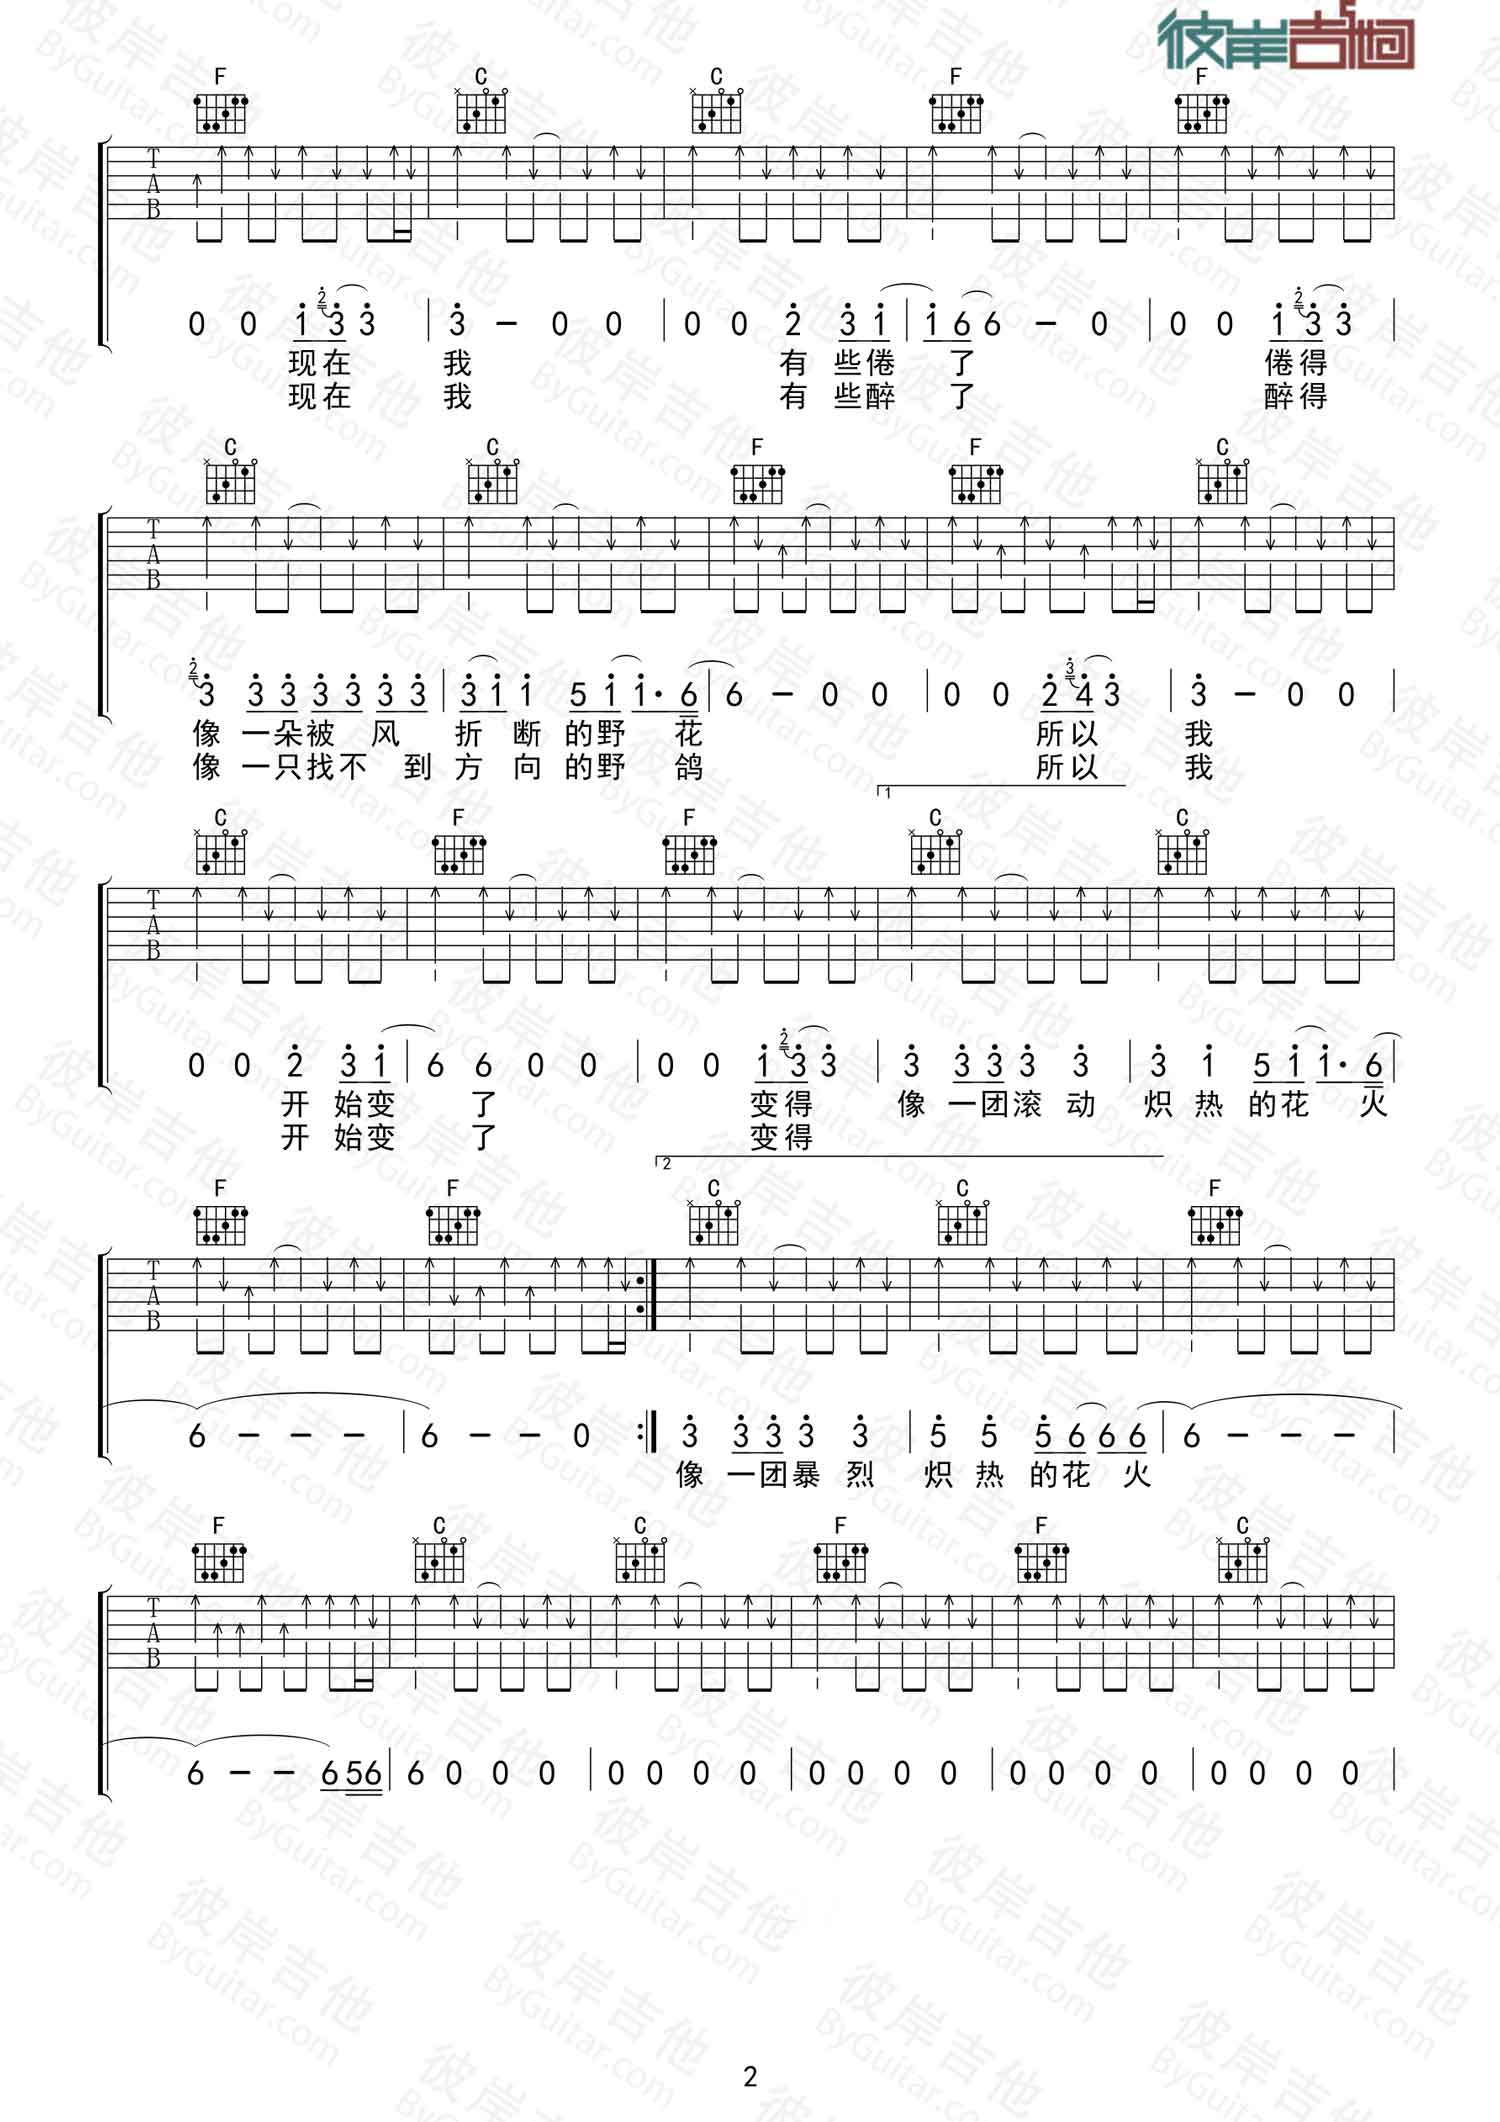 新裤子乐队《花火》吉他谱(C调)-Guitar Music Score